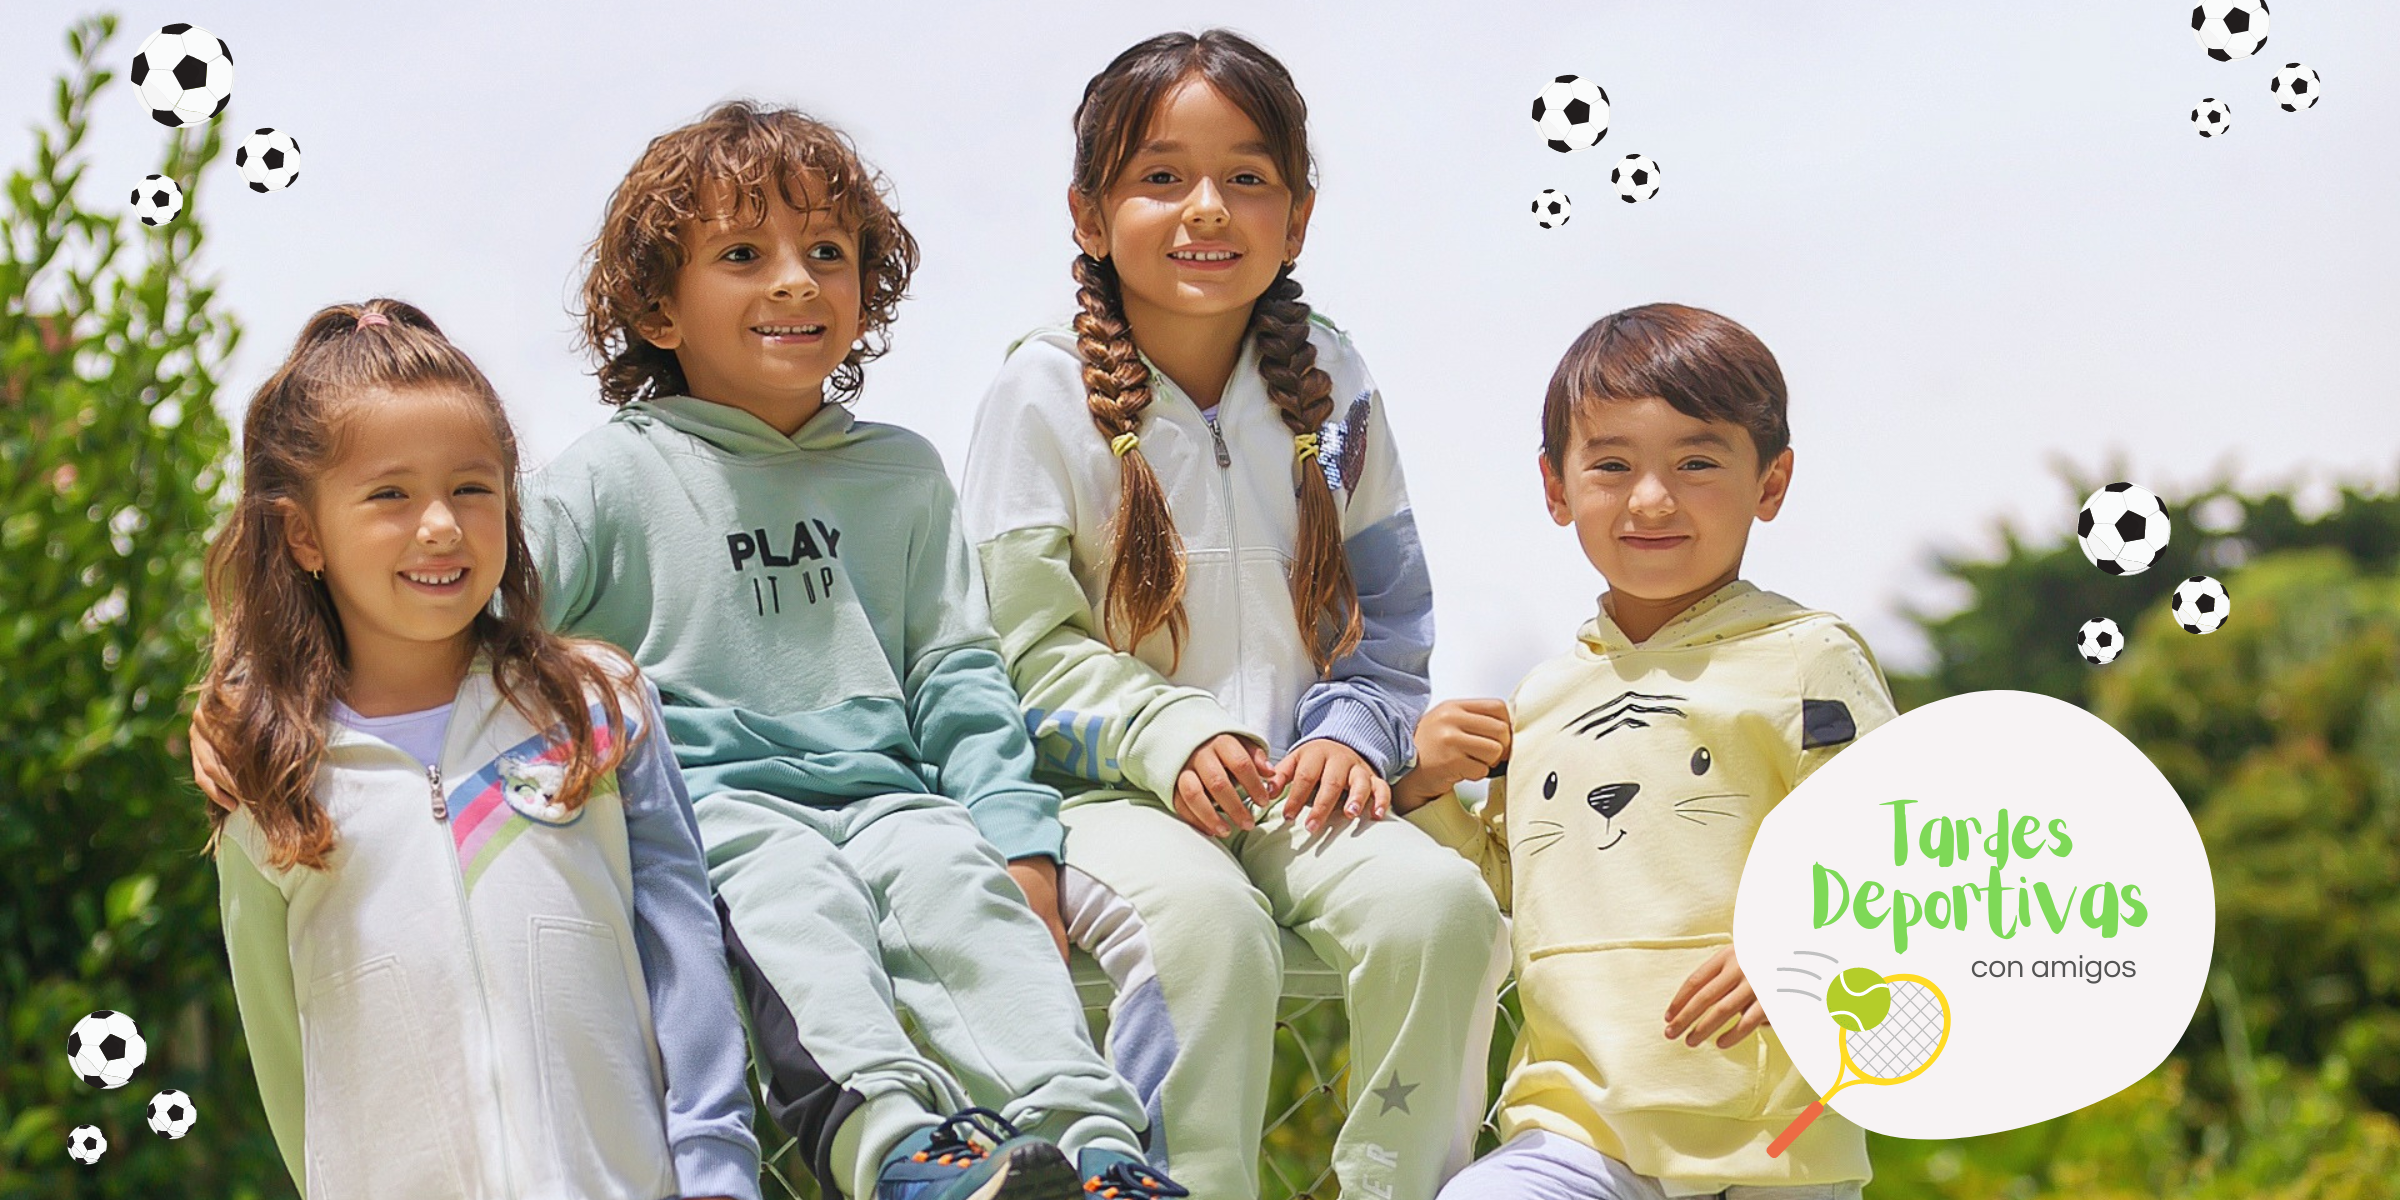 ¿Cuáles son los mejores materiales para la ropa deportiva de los niños?